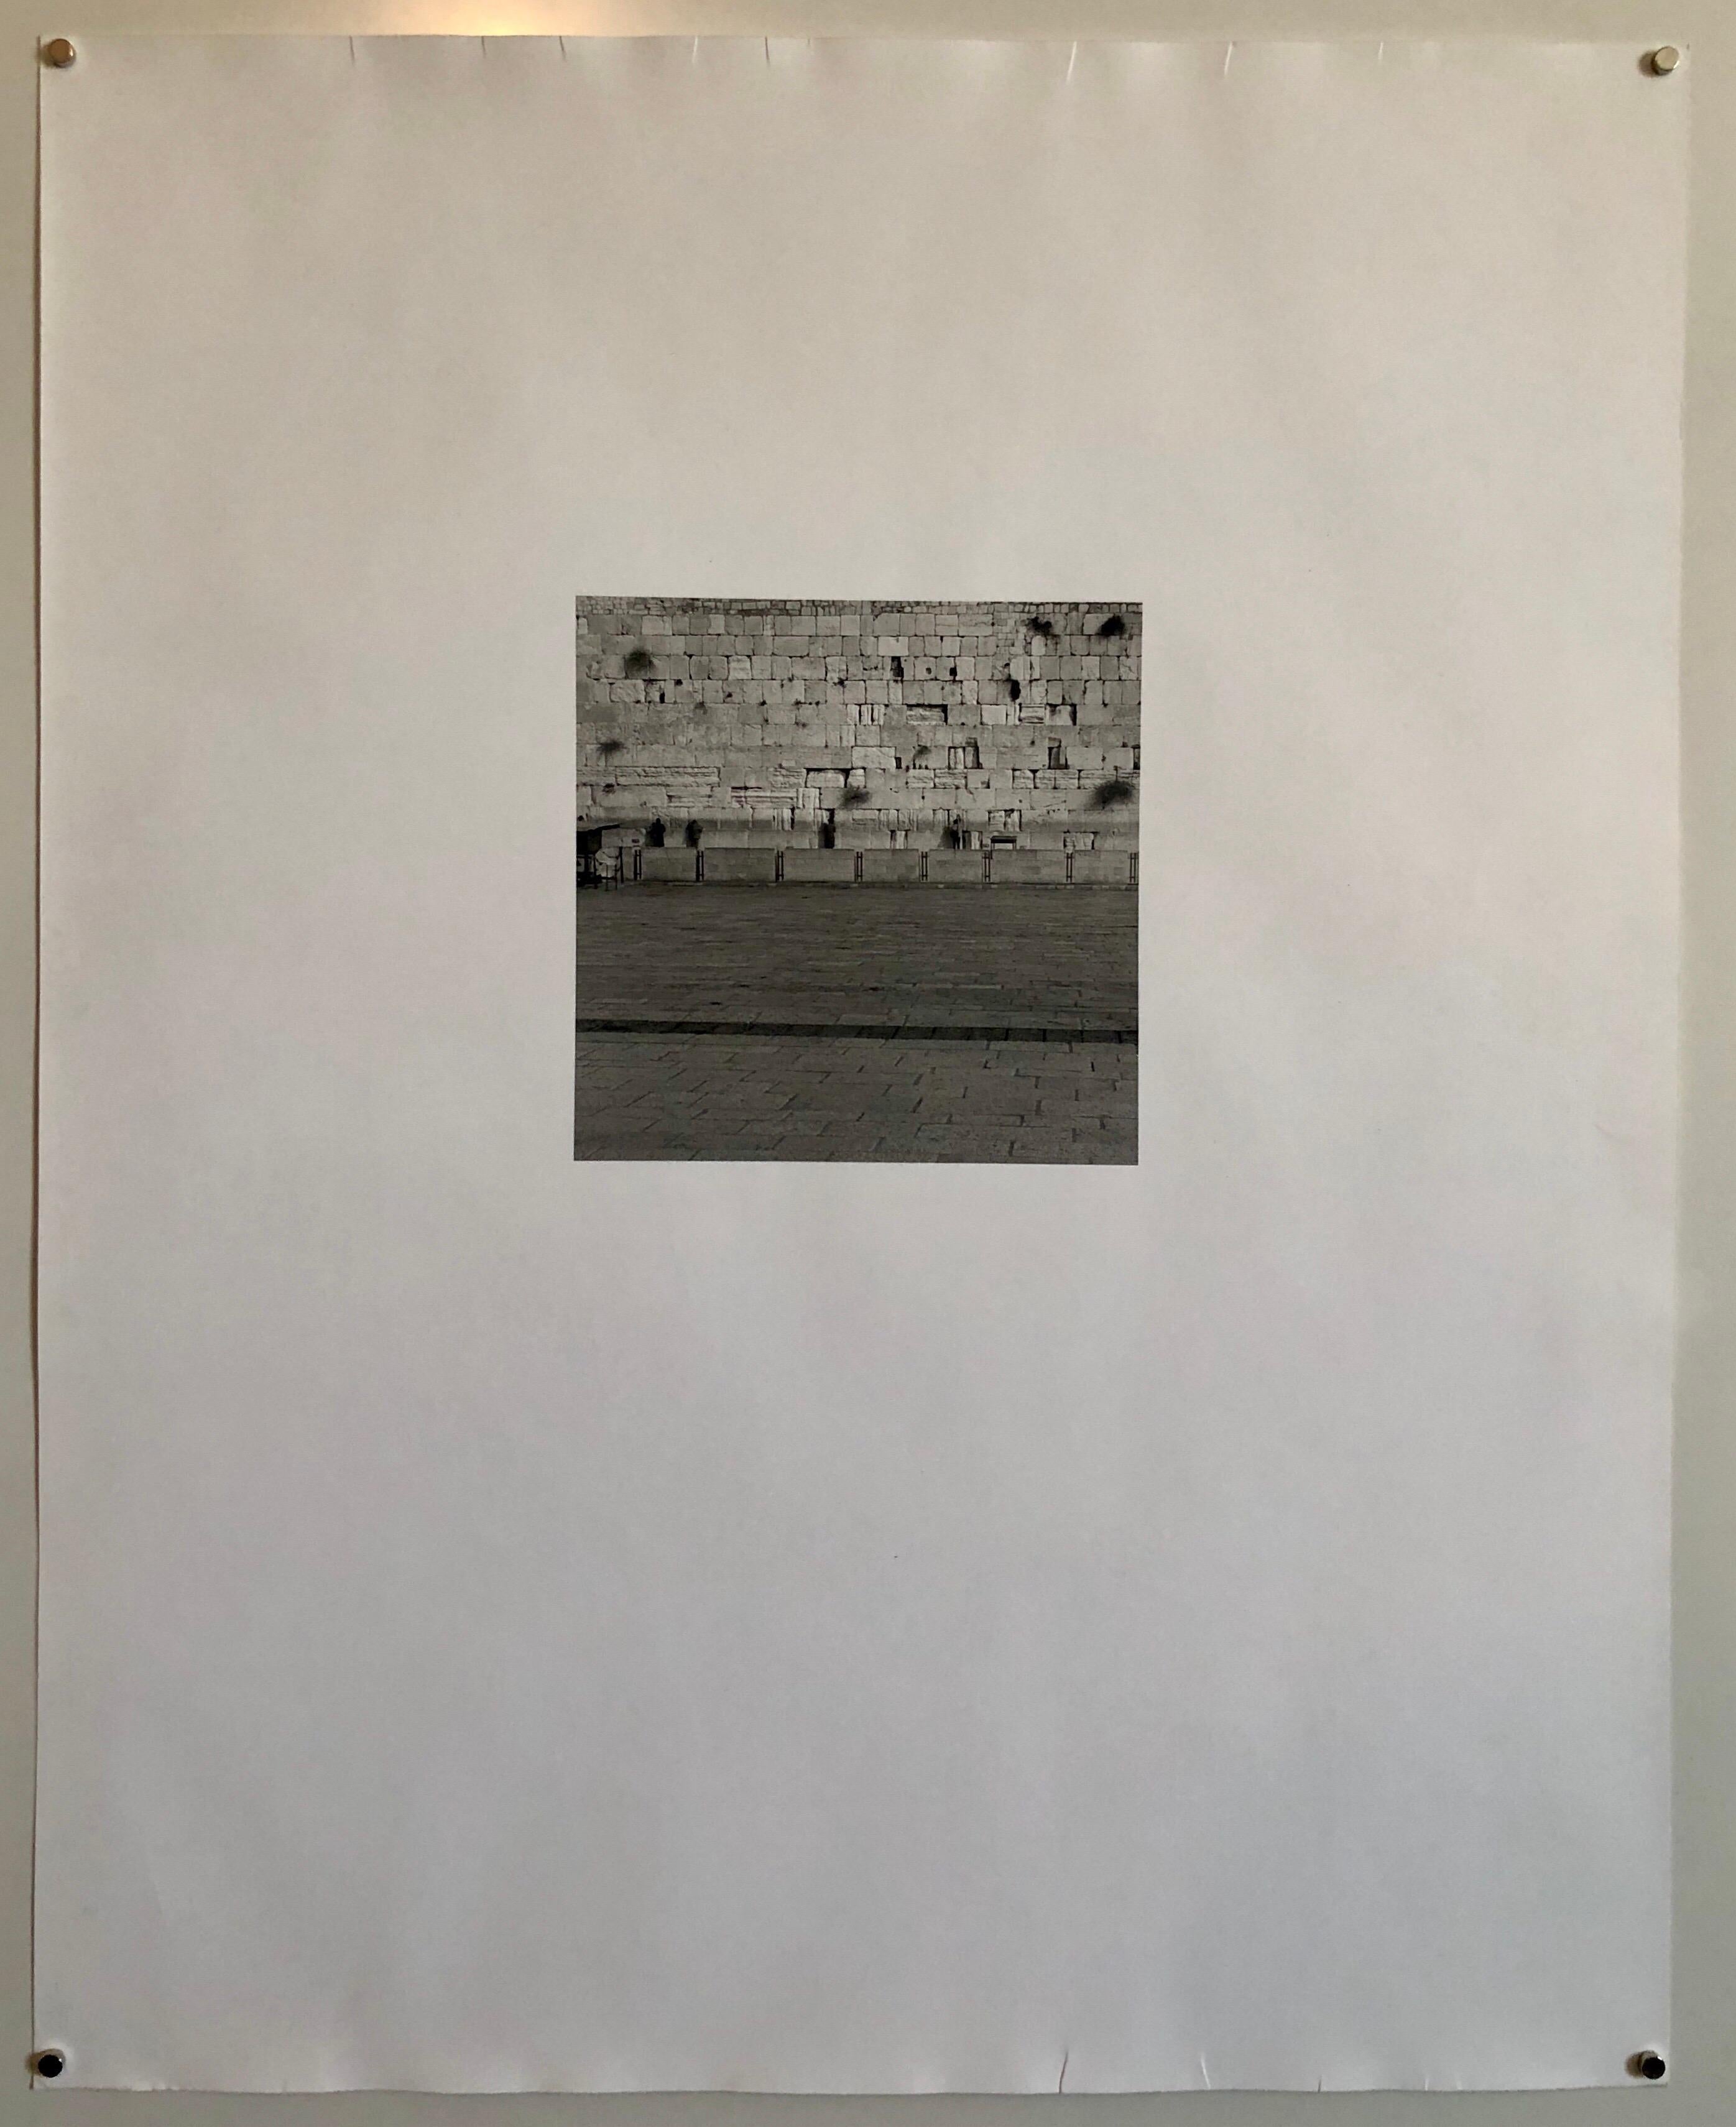 Photo prise en noir et blanc du Mur occidental (Mur des Lamentations) Kotel Hamaaravi à Jérusalem Israël. Signé à la main, daté et titré. Très petite édition de seulement 5 exemplaires. 

(Américano-israélien) Né à New York, Mikael Levin a grandi en